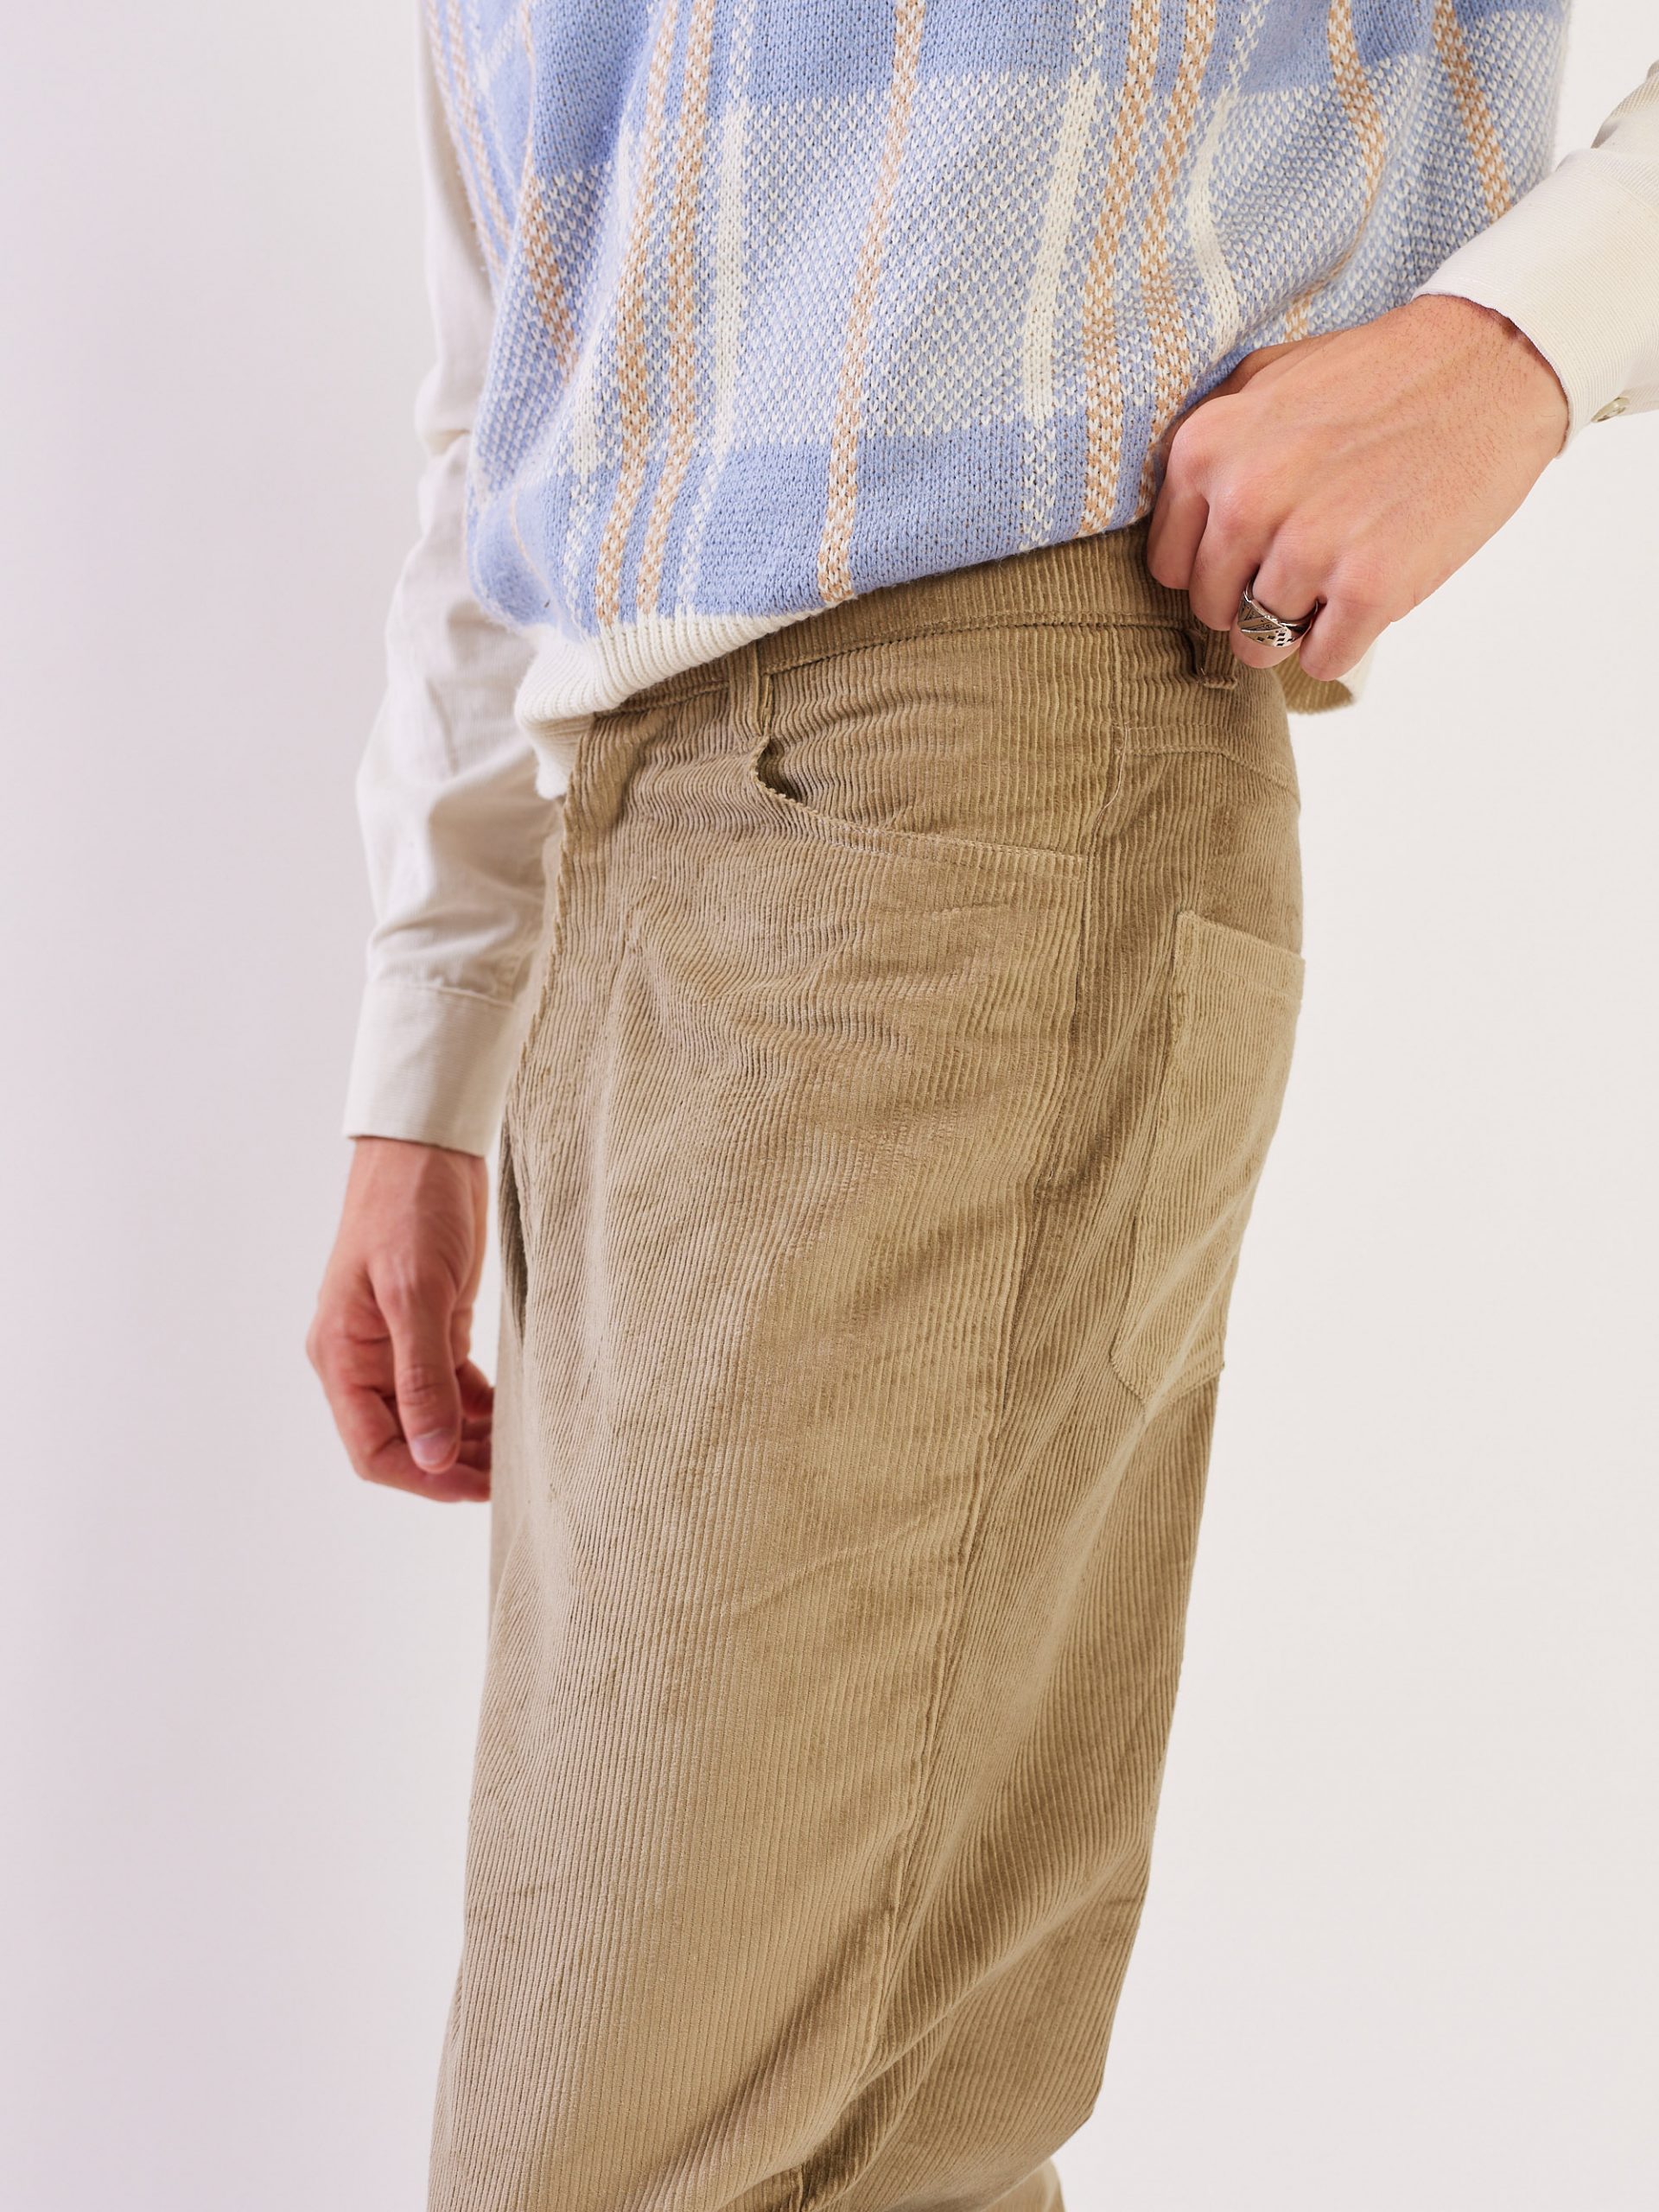 Buy Men's Corduroy Pants Online In India